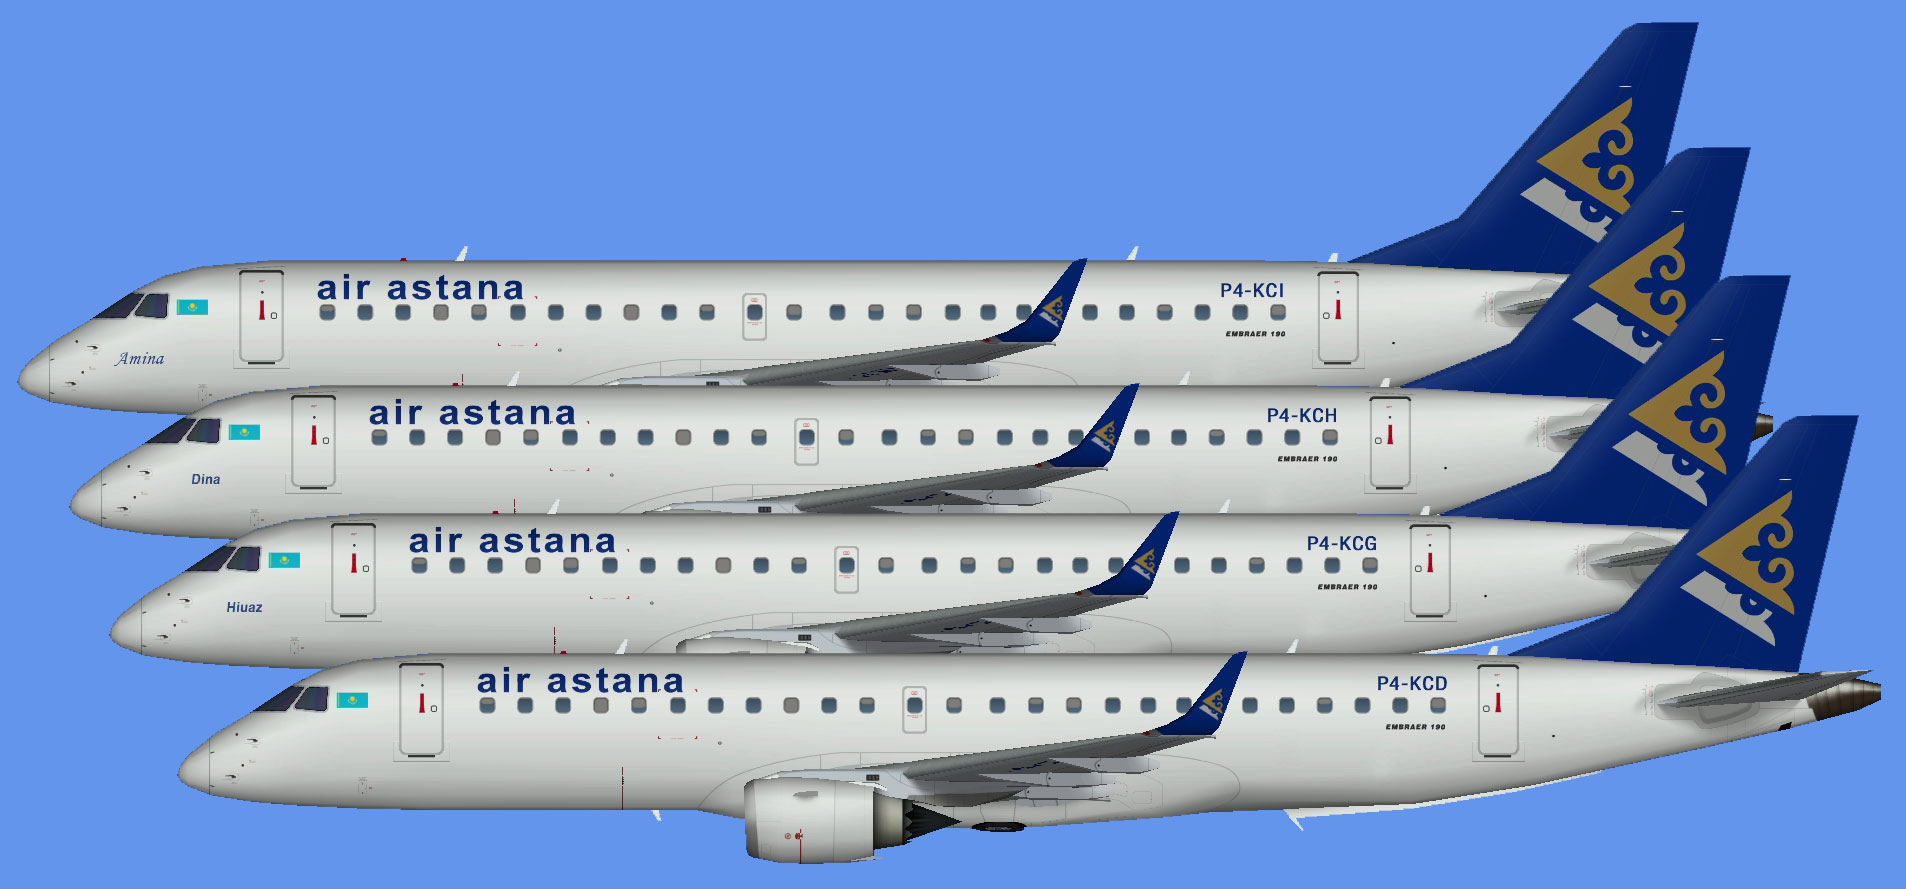 Air Astana E-190 fleet